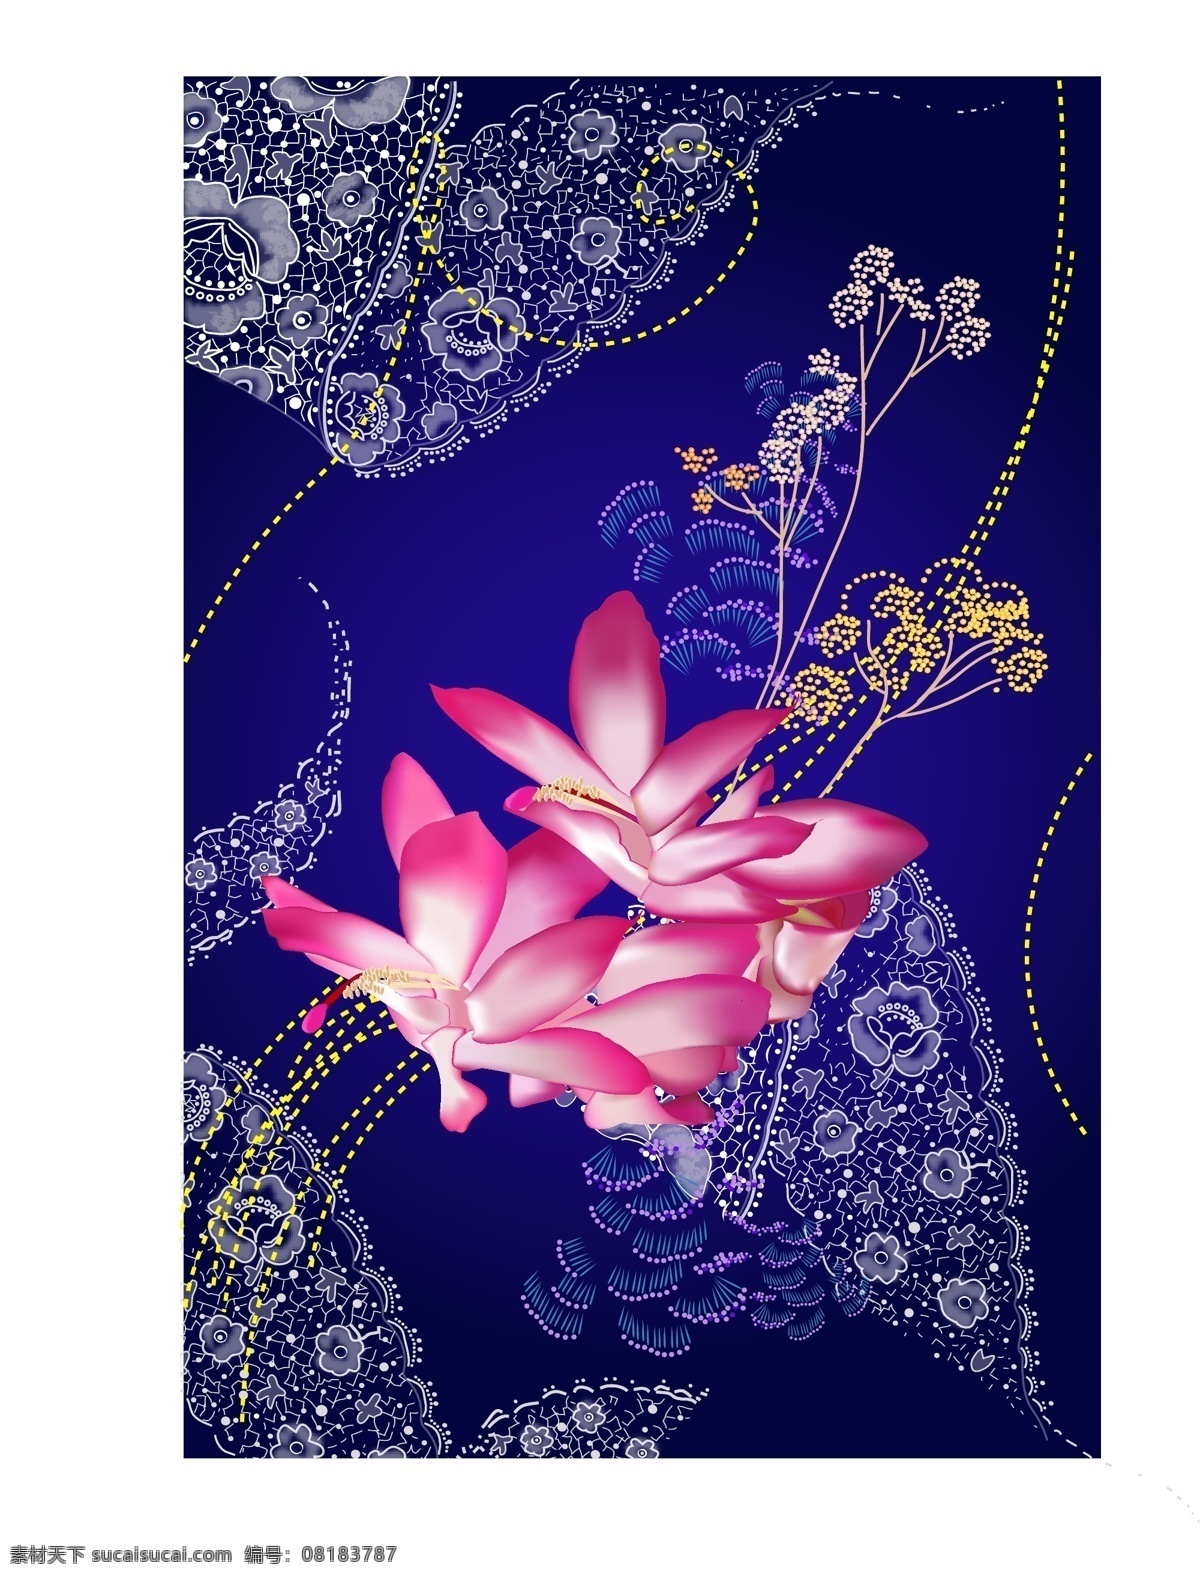 中国 古典 花纹 背景 荷花 花卉 模板 设计稿 素材元素 图案 中国风 源文件 矢量图